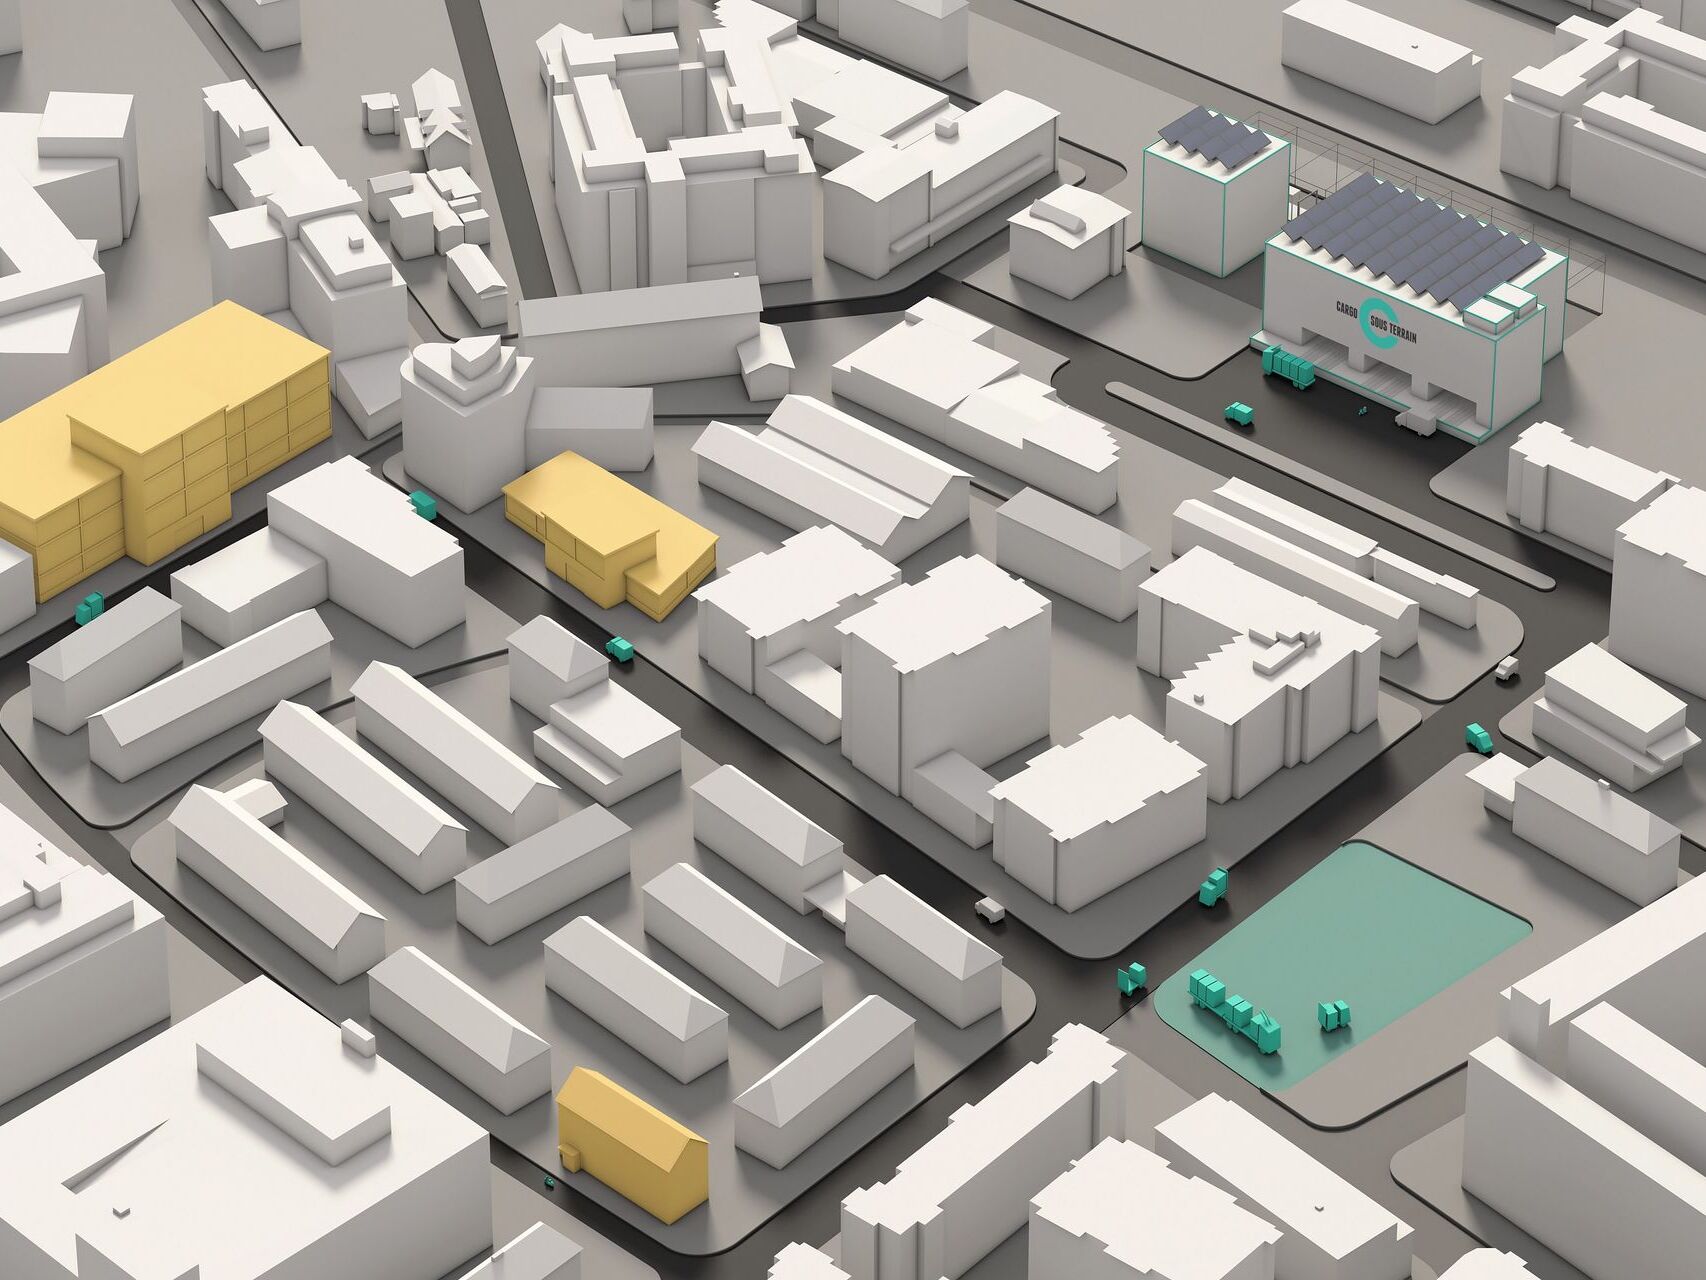 সমস্ত কার্গো সোস টেরেন সিটি লজিস্টিক সংযোগের 3D সিমুলেশন